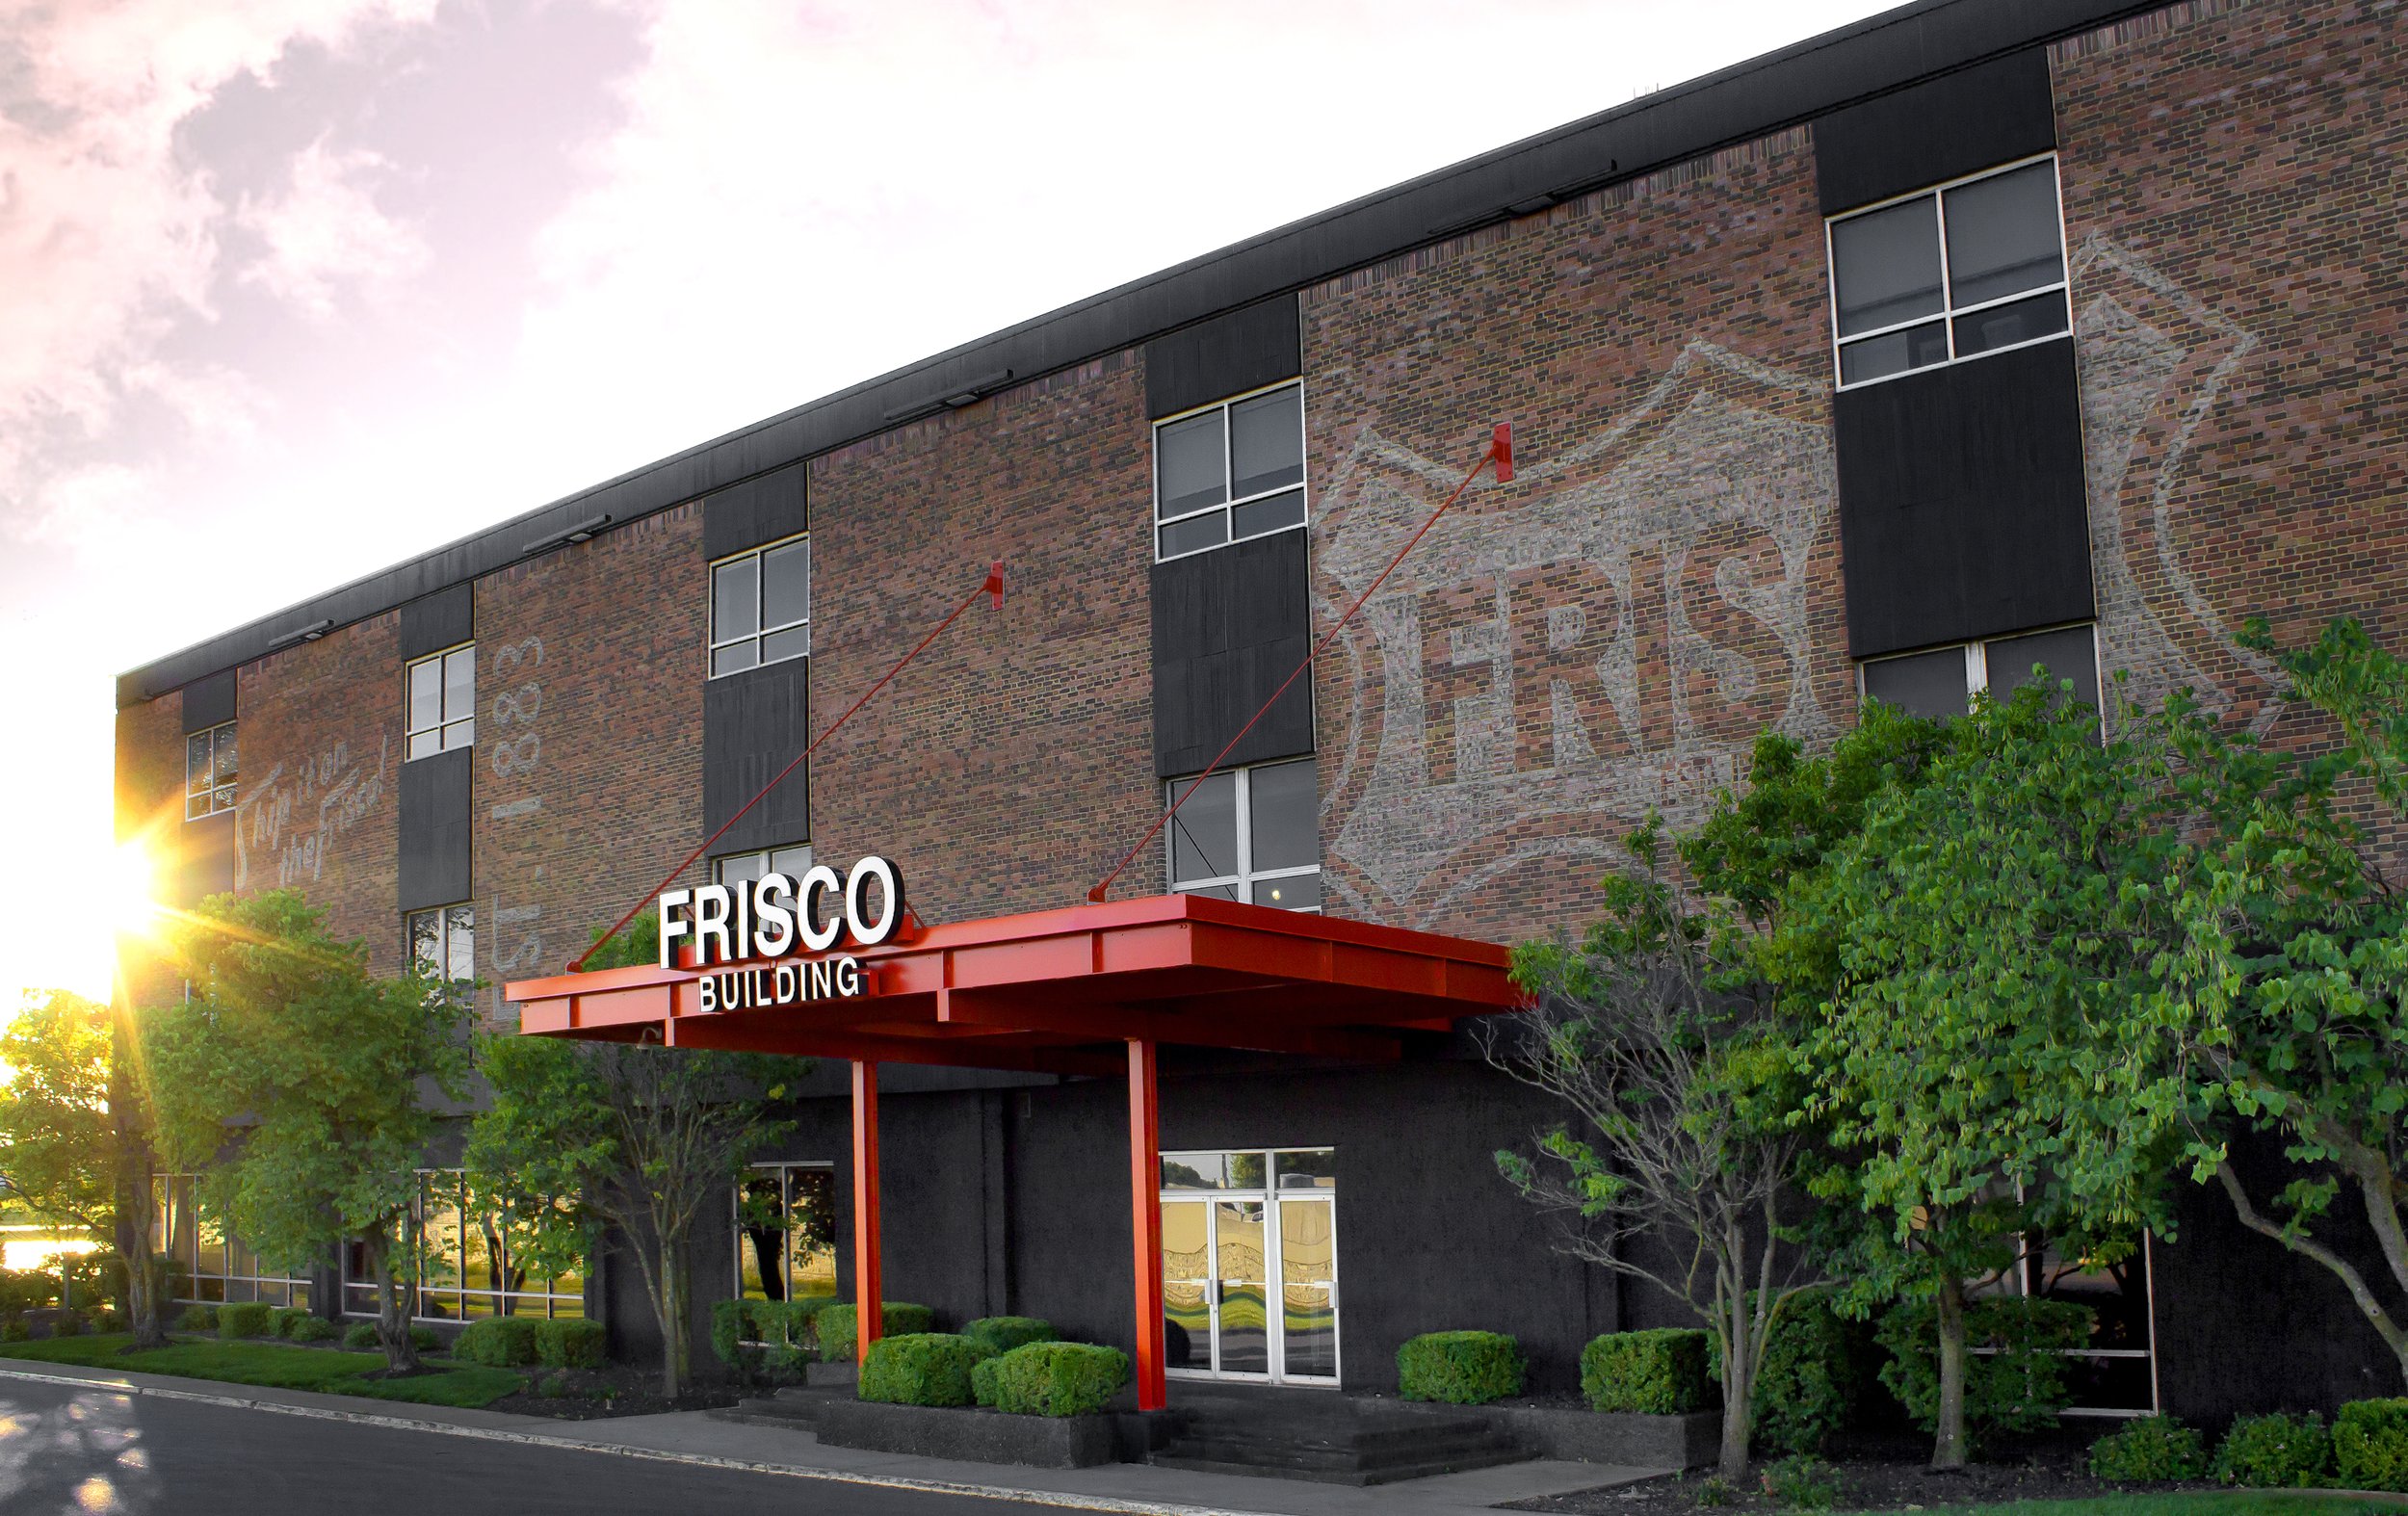 THE FRISCO BUILDING